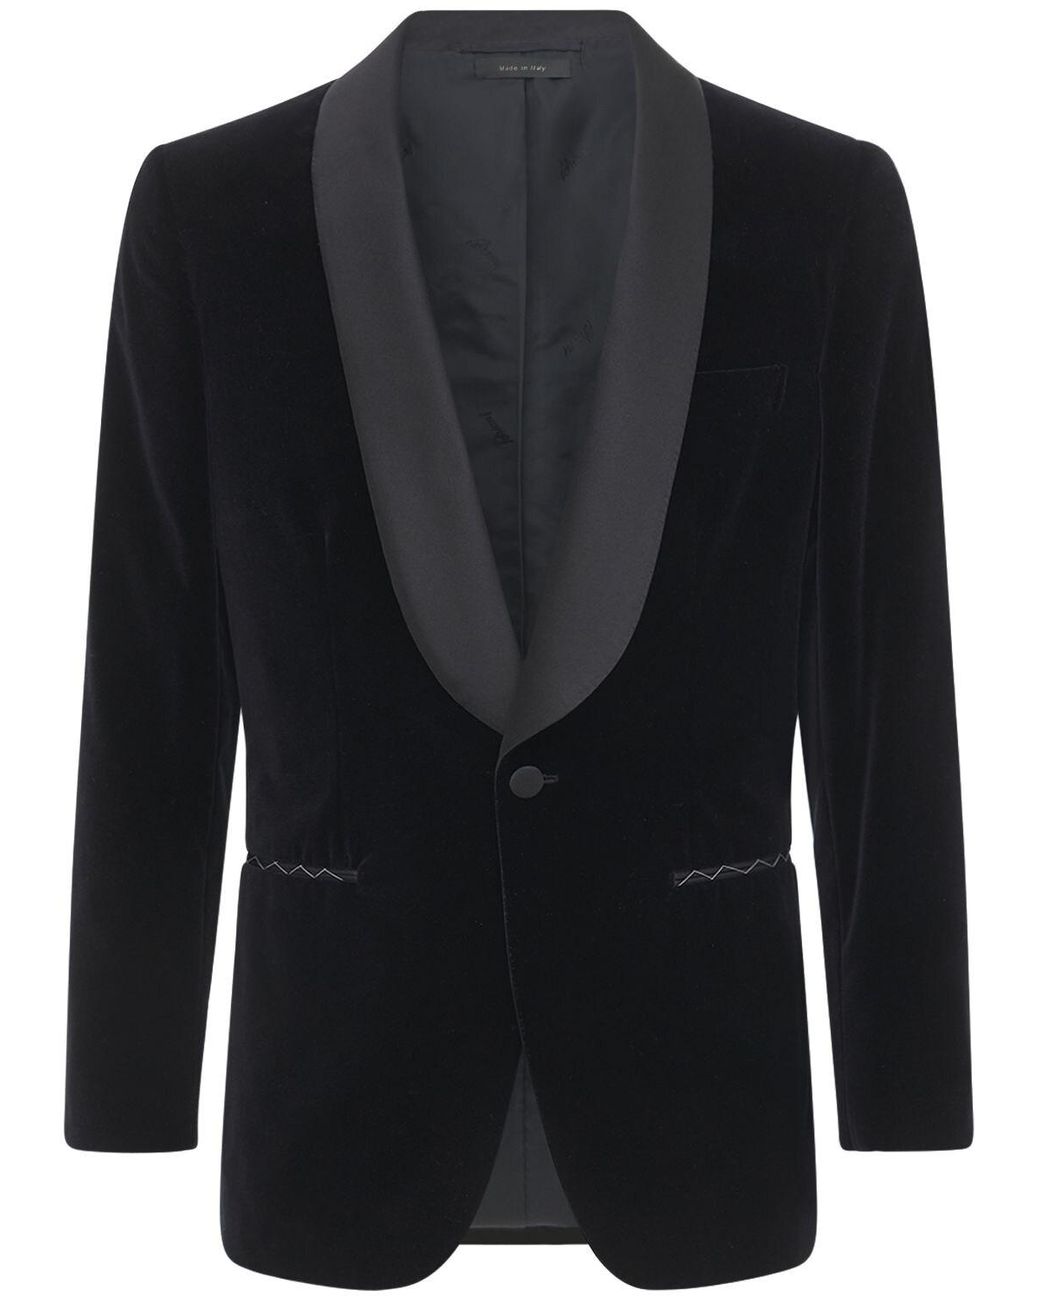 Brioni Bp Velvet Cotton Tuxedo Jacket in Black for Men - Lyst